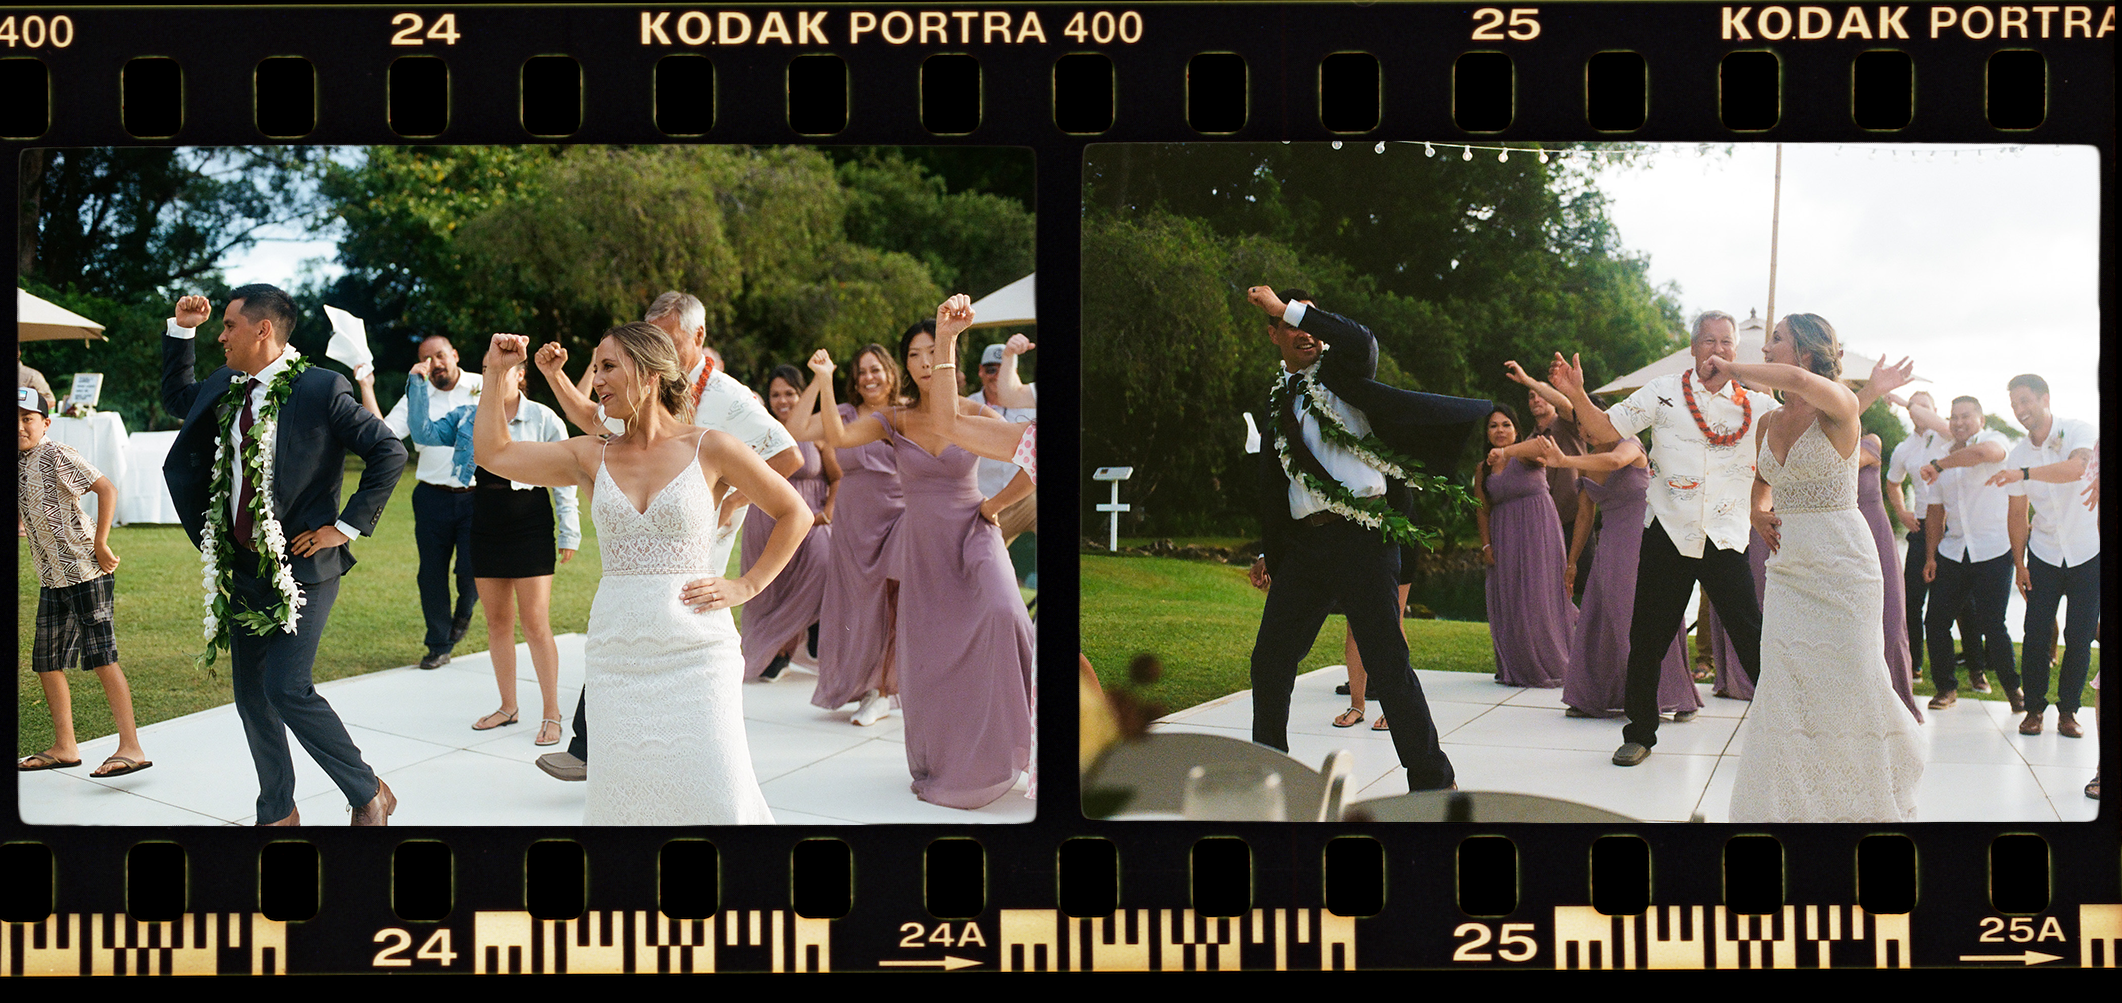 Kodak 400 4x  copy.png